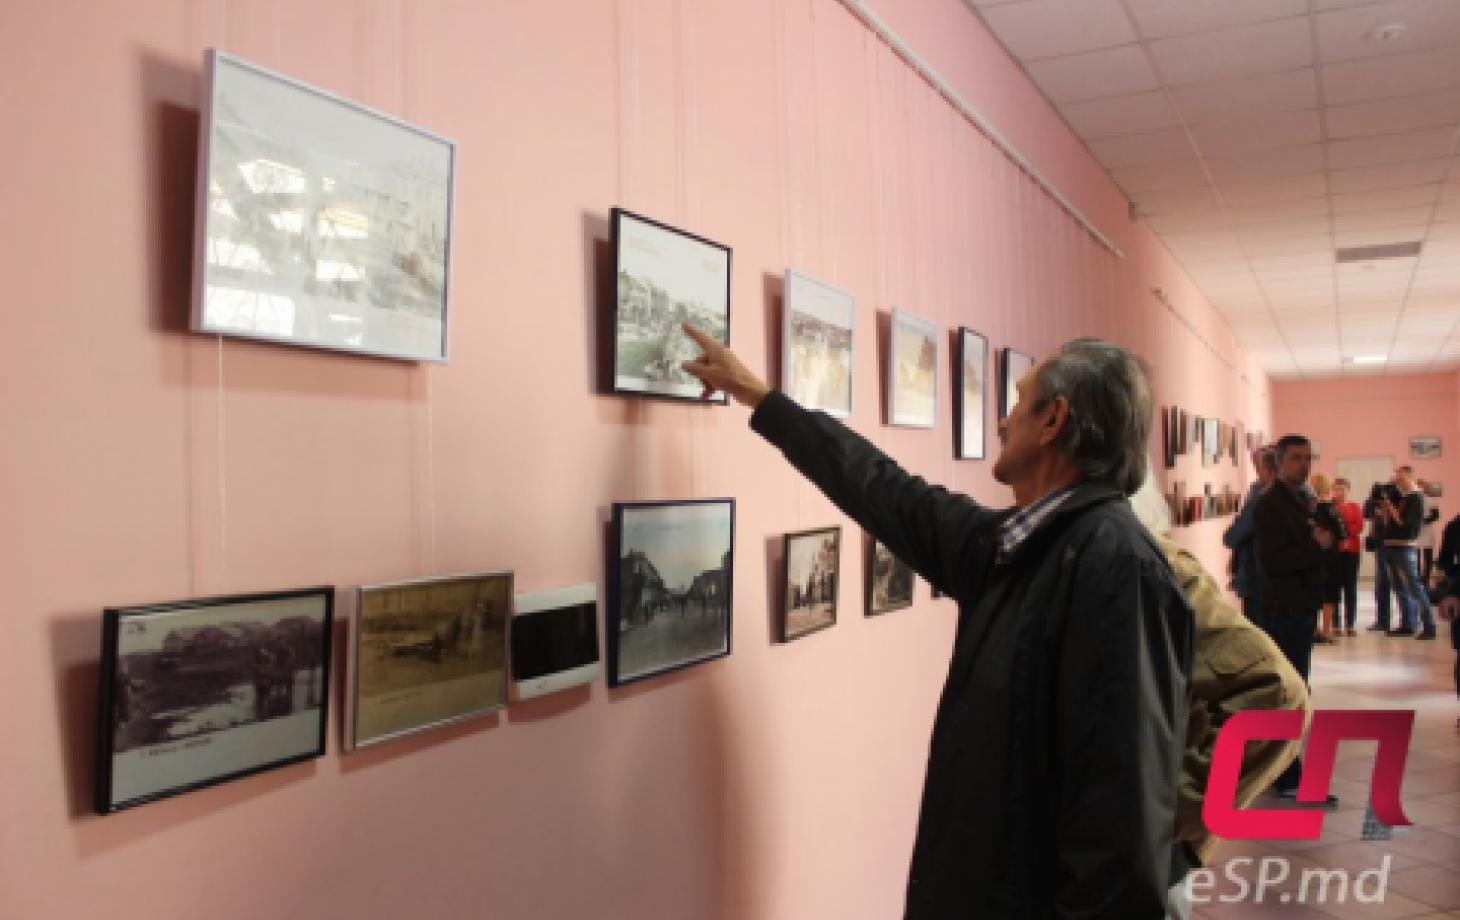 В преддверии Дня города в Музее истории и этнографии открылась выставка фотокарточек с видами города начала XX века под названием «Воспоминания о Бельцах». 